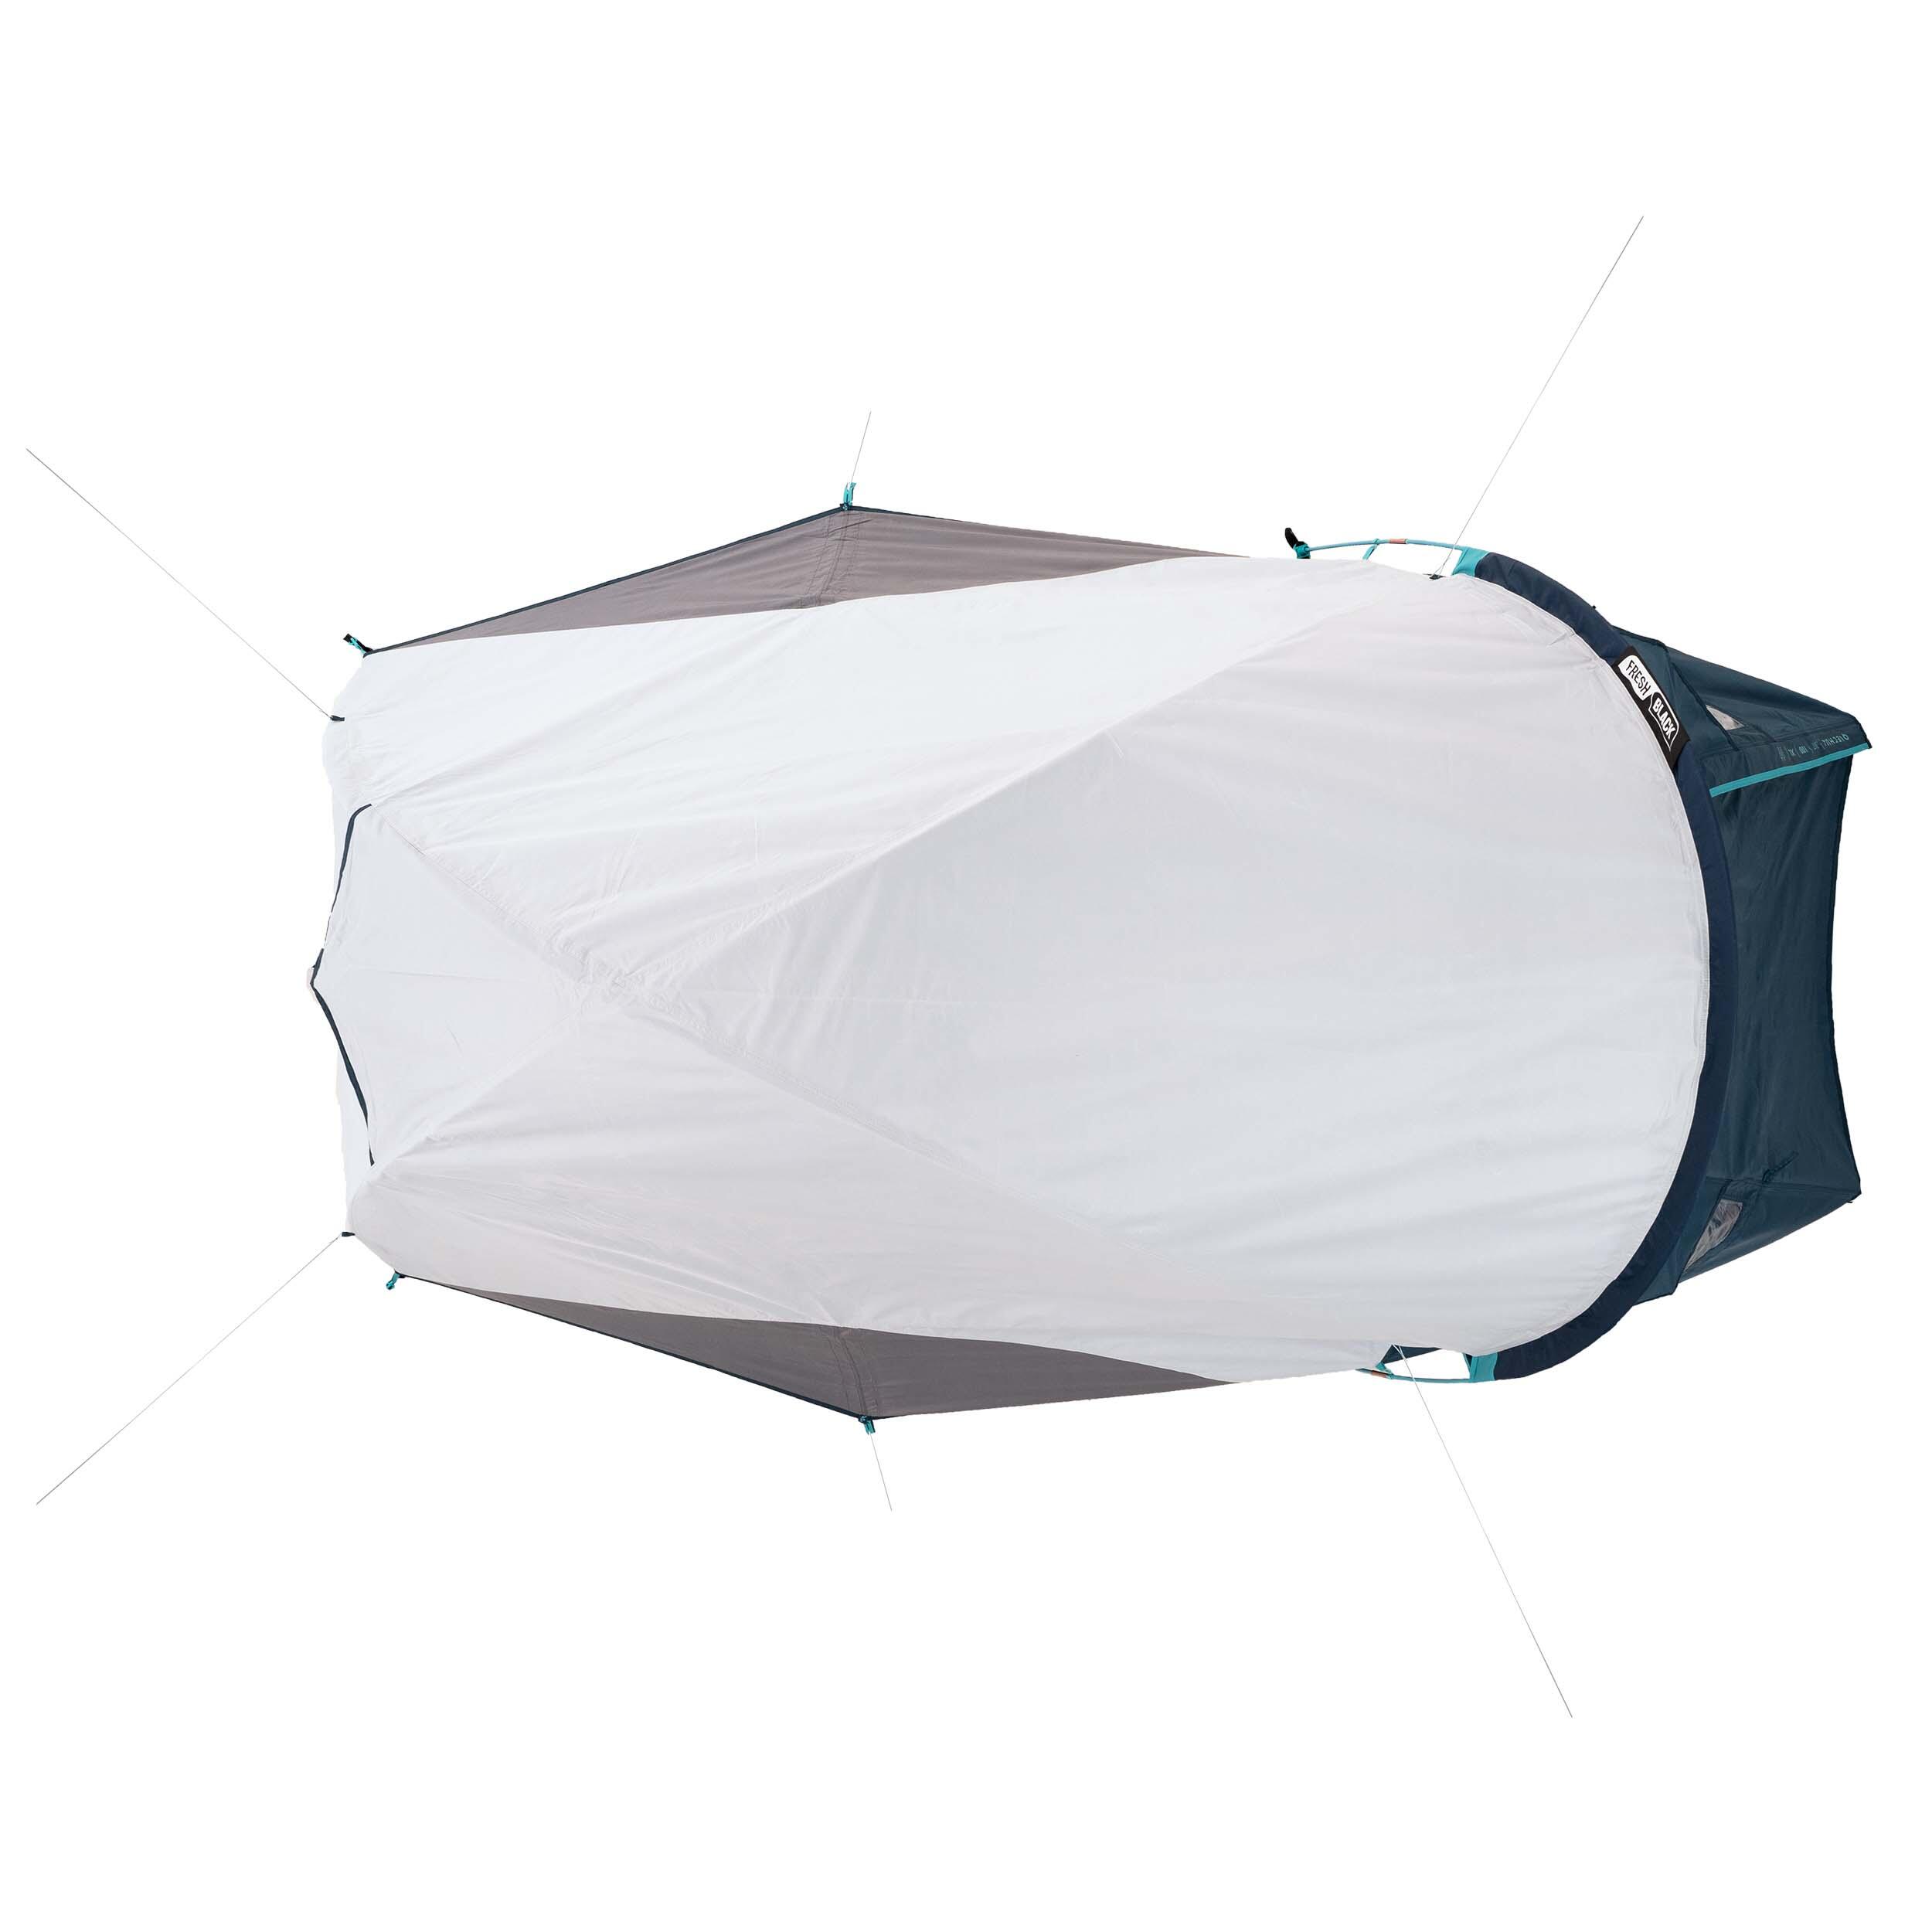 Camping tent MH100 XL - 2-P - Fresh&Black 17/17